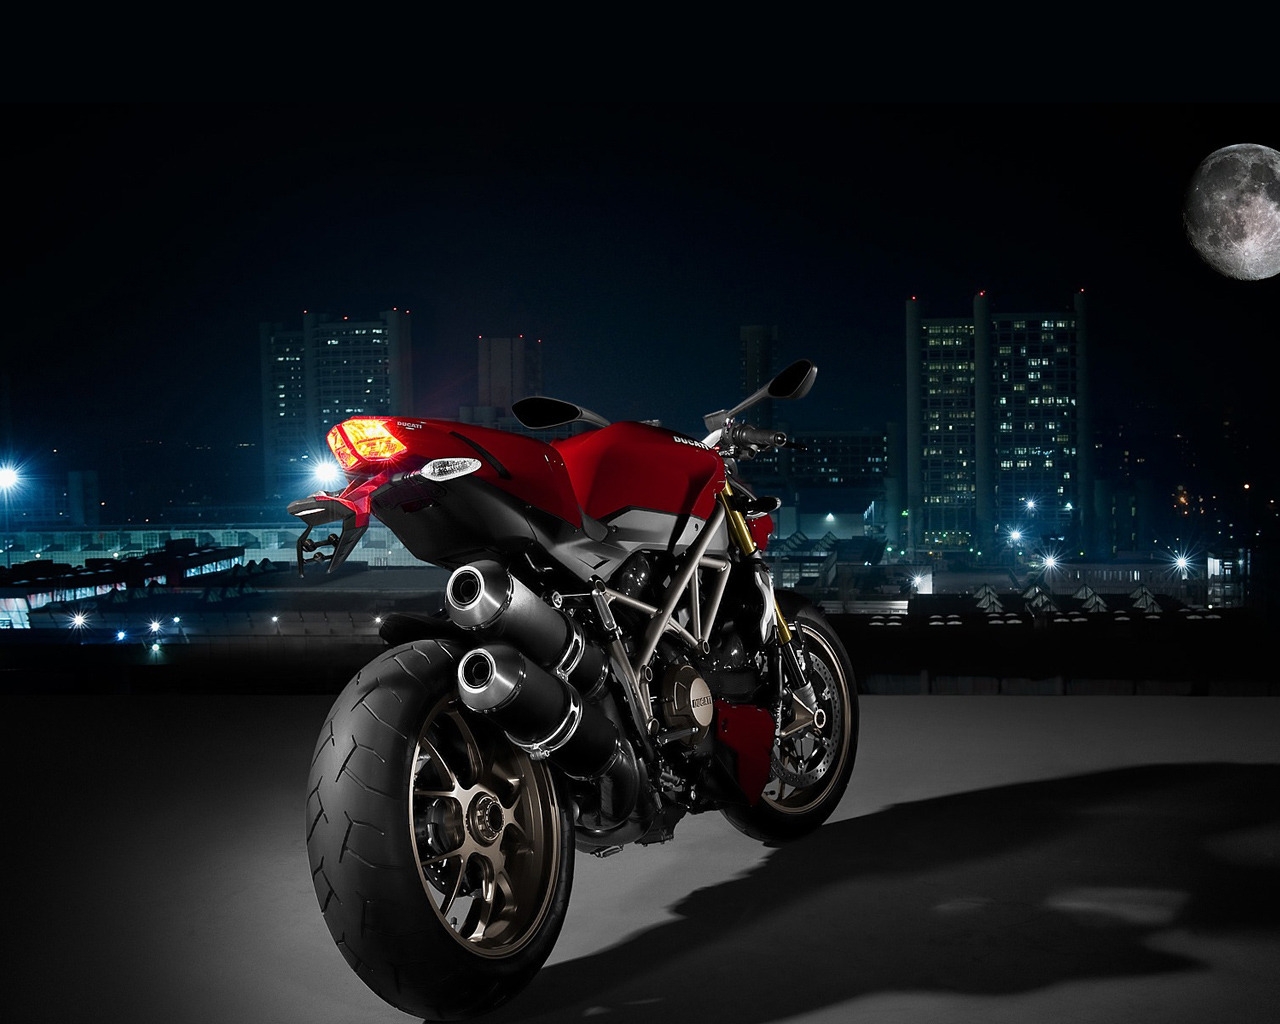 Ducati Super Sport Rear Angle for 1280 x 1024 resolution